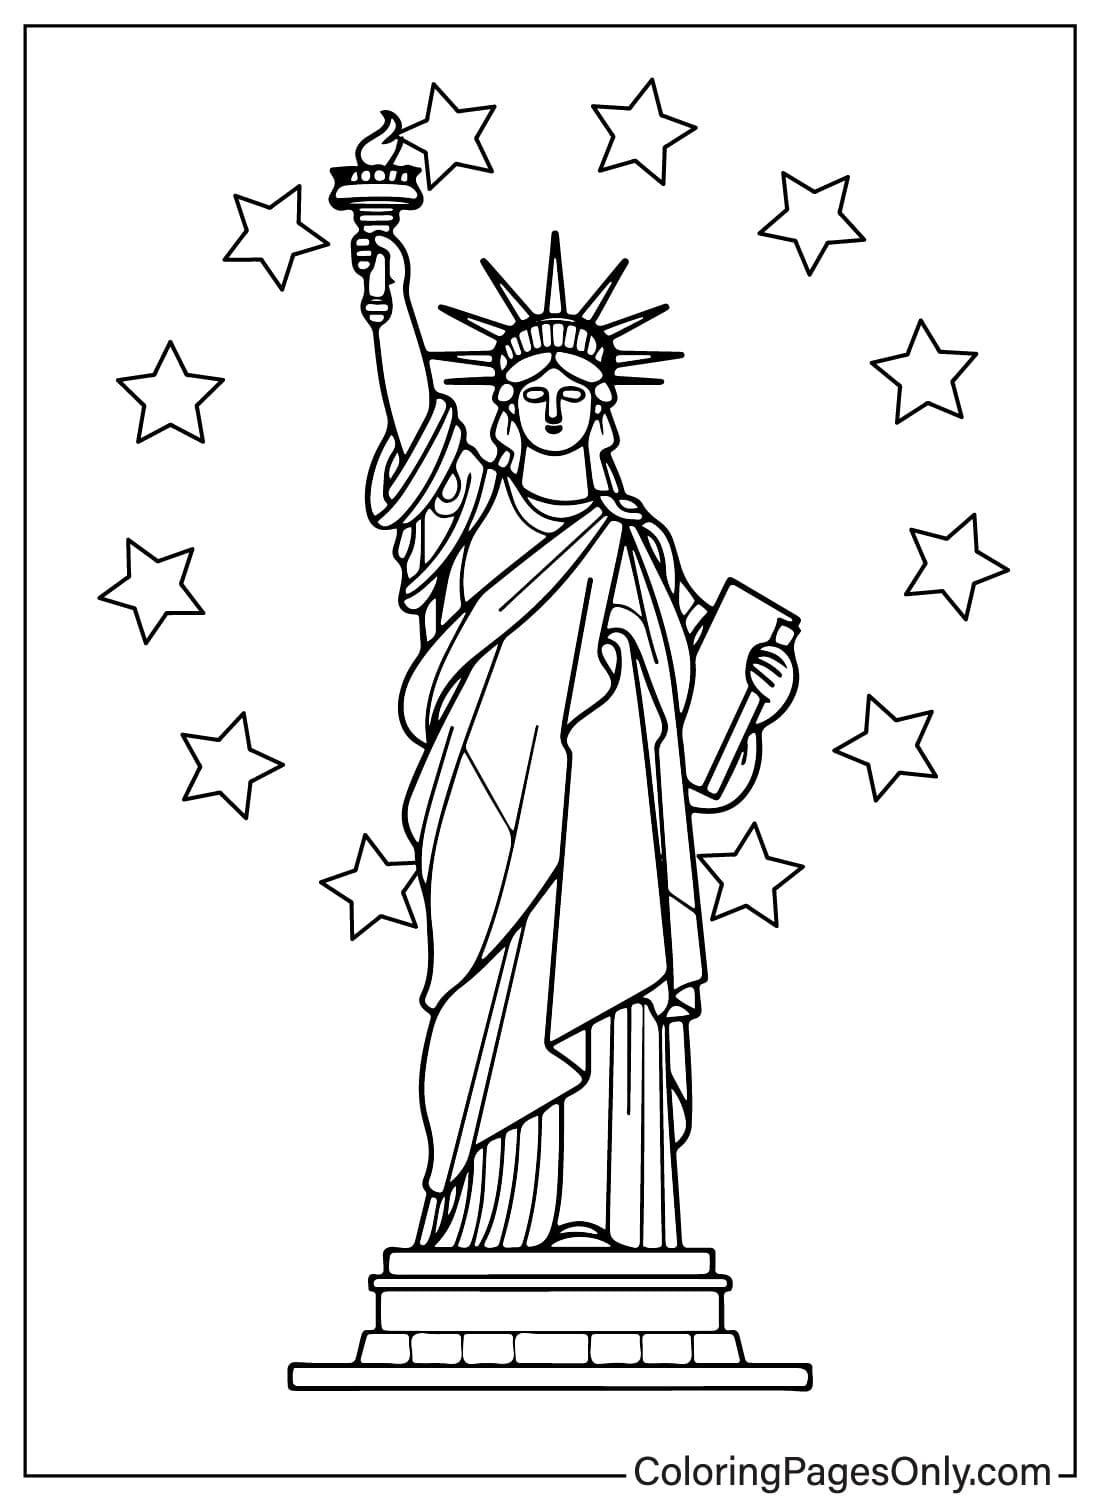 Imagen de la Estatua de la Libertad para colorear de la Estatua de la Libertad